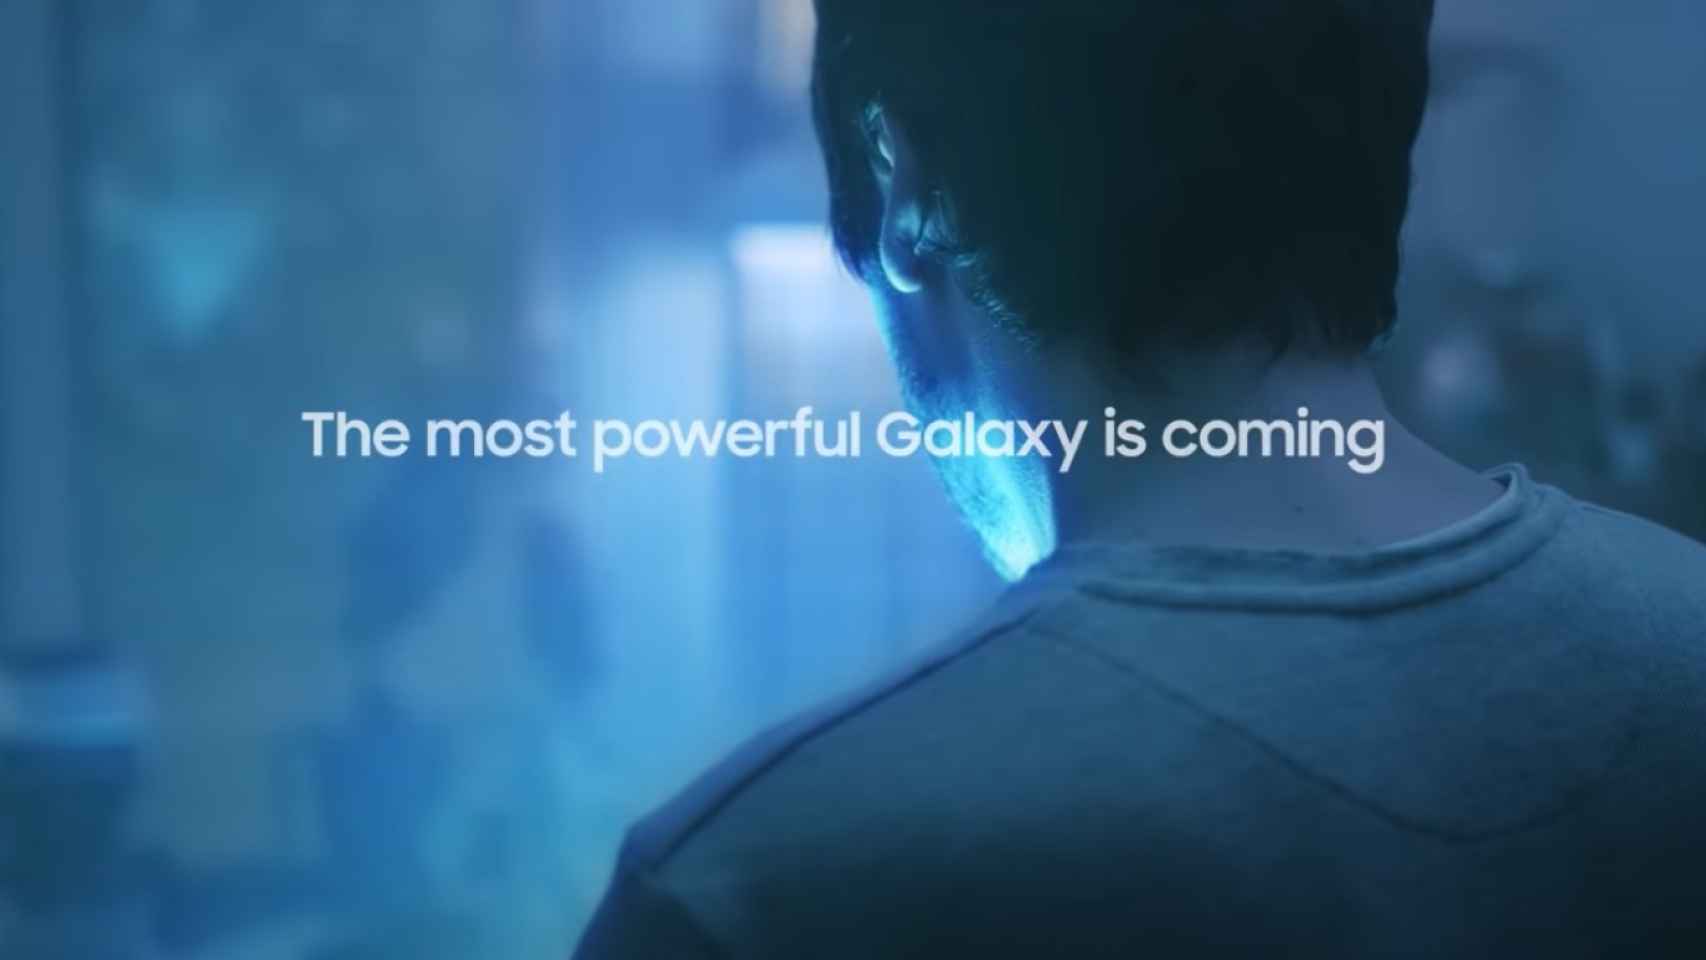 Samsung anuncia nuevo evento y promete el Galaxy más potente hasta la fecha